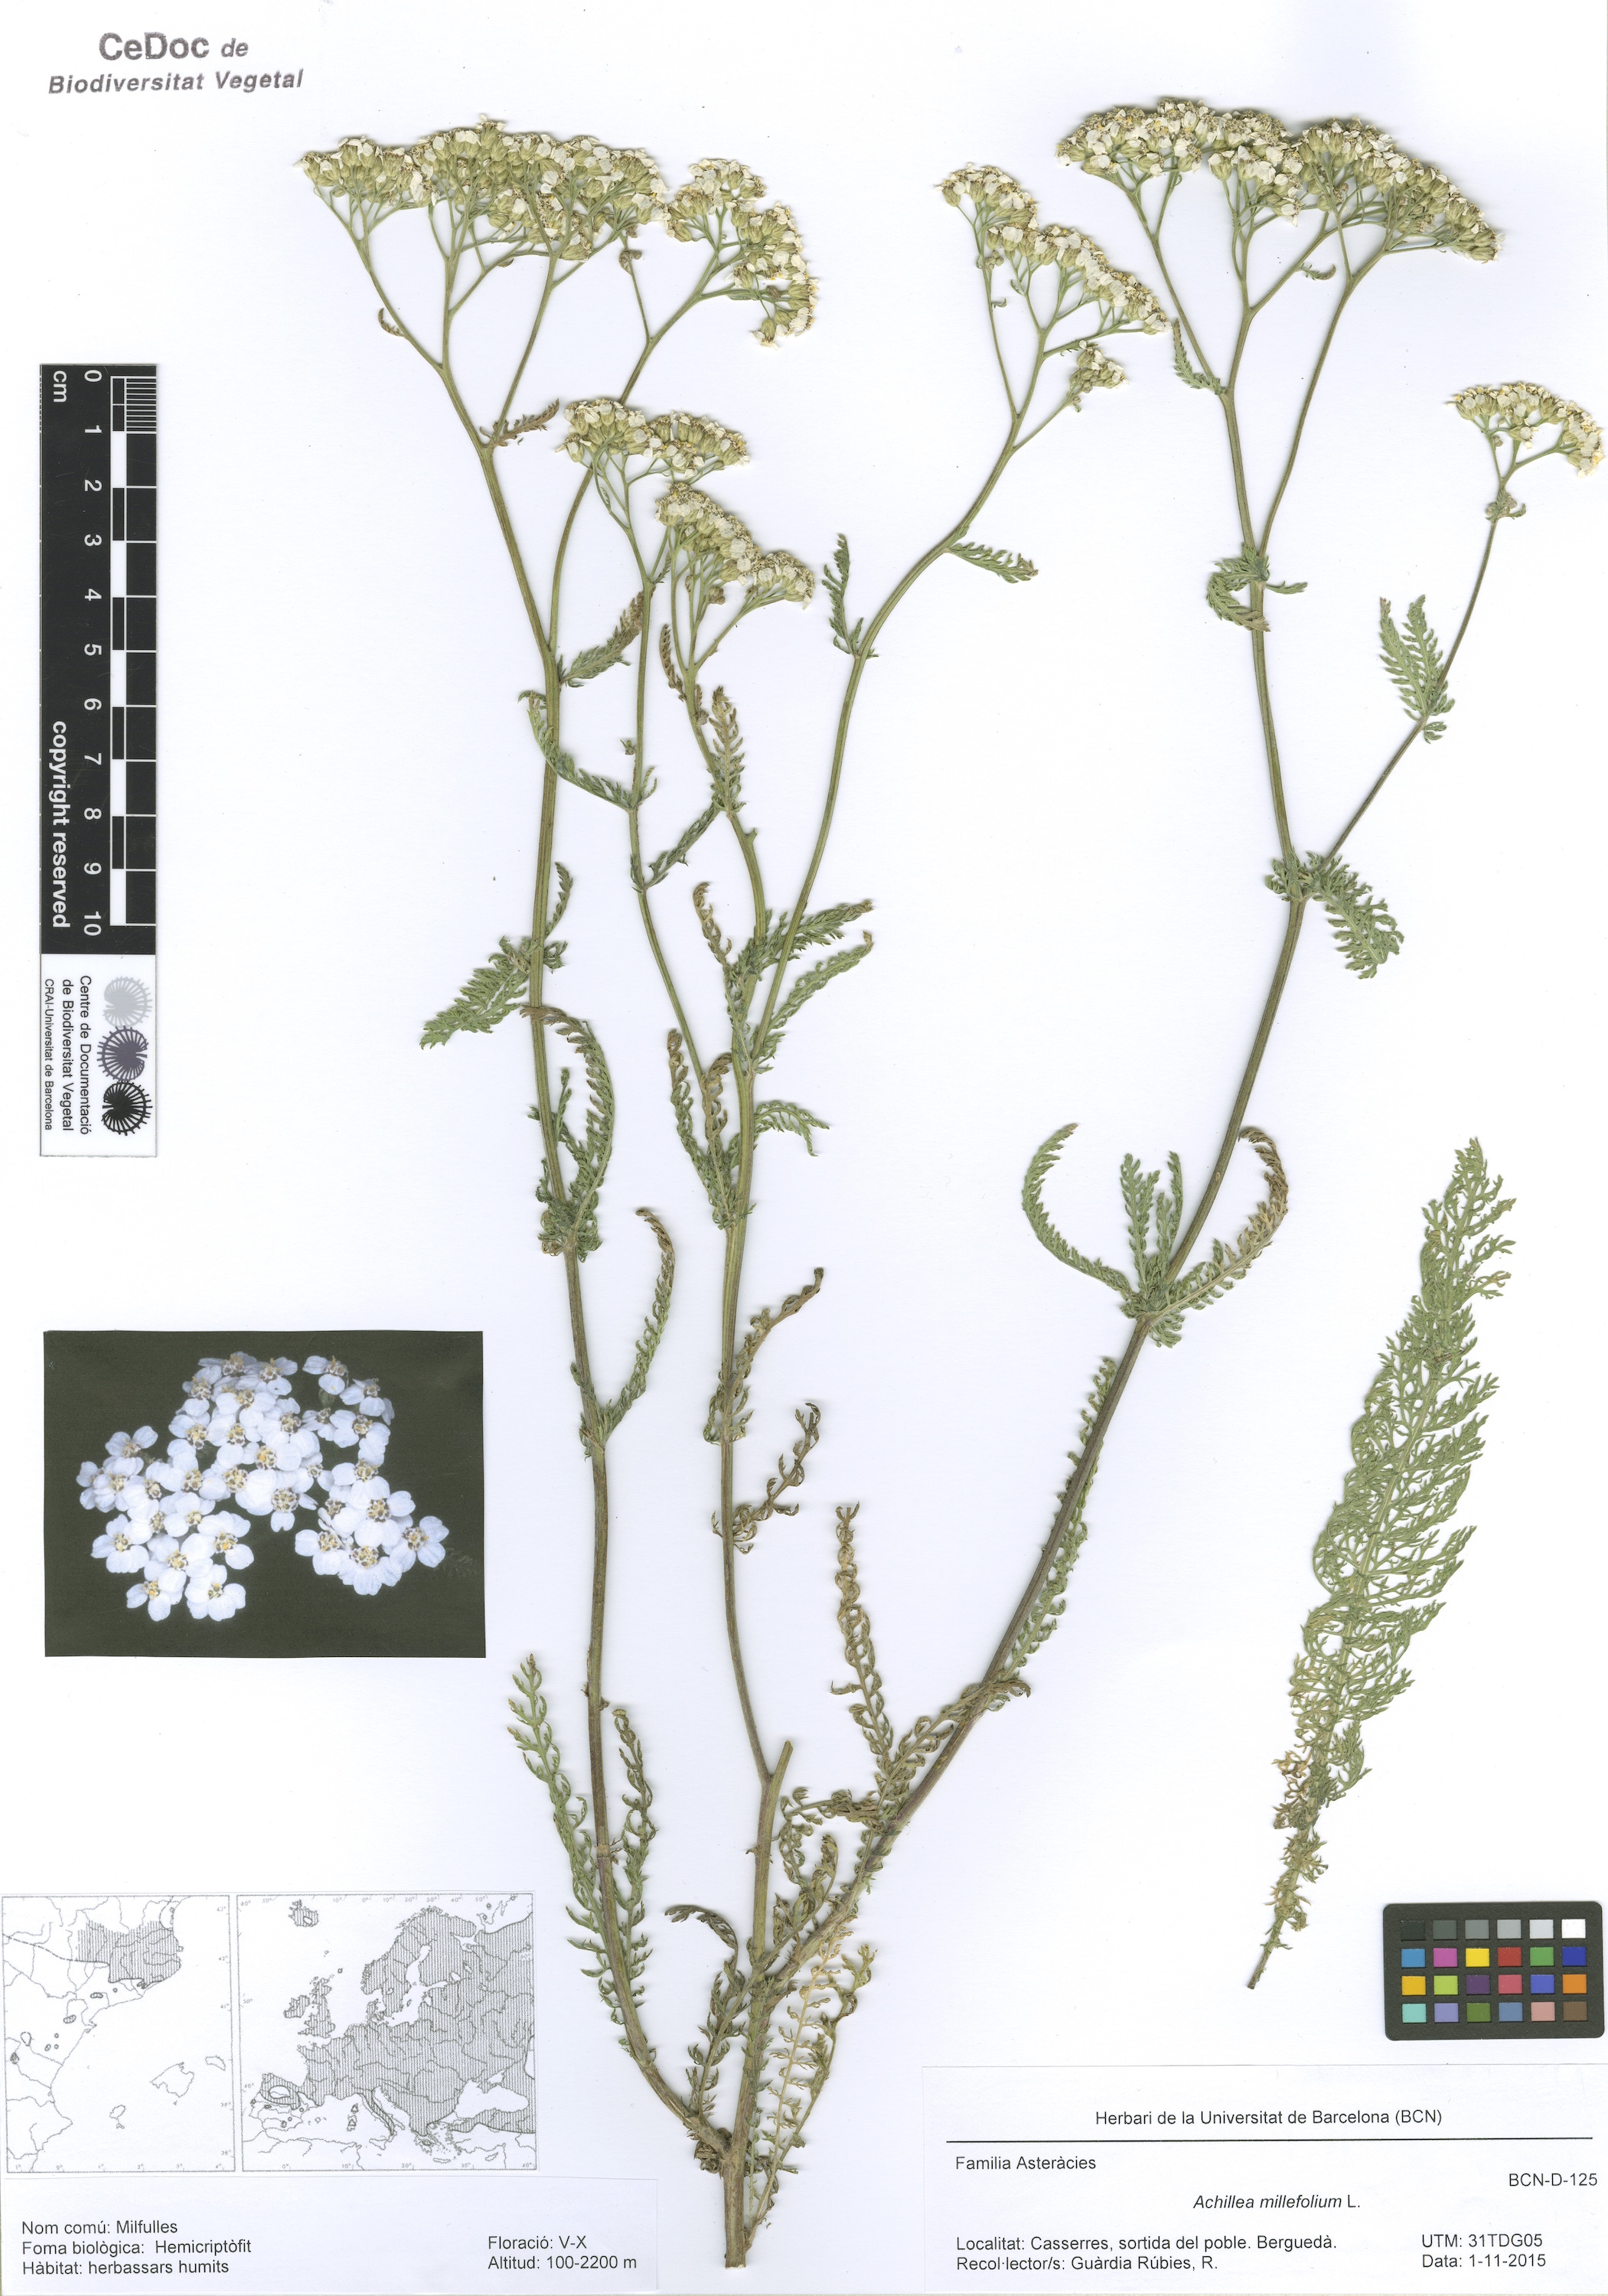 Achillea millefolium L. (Milfulles)